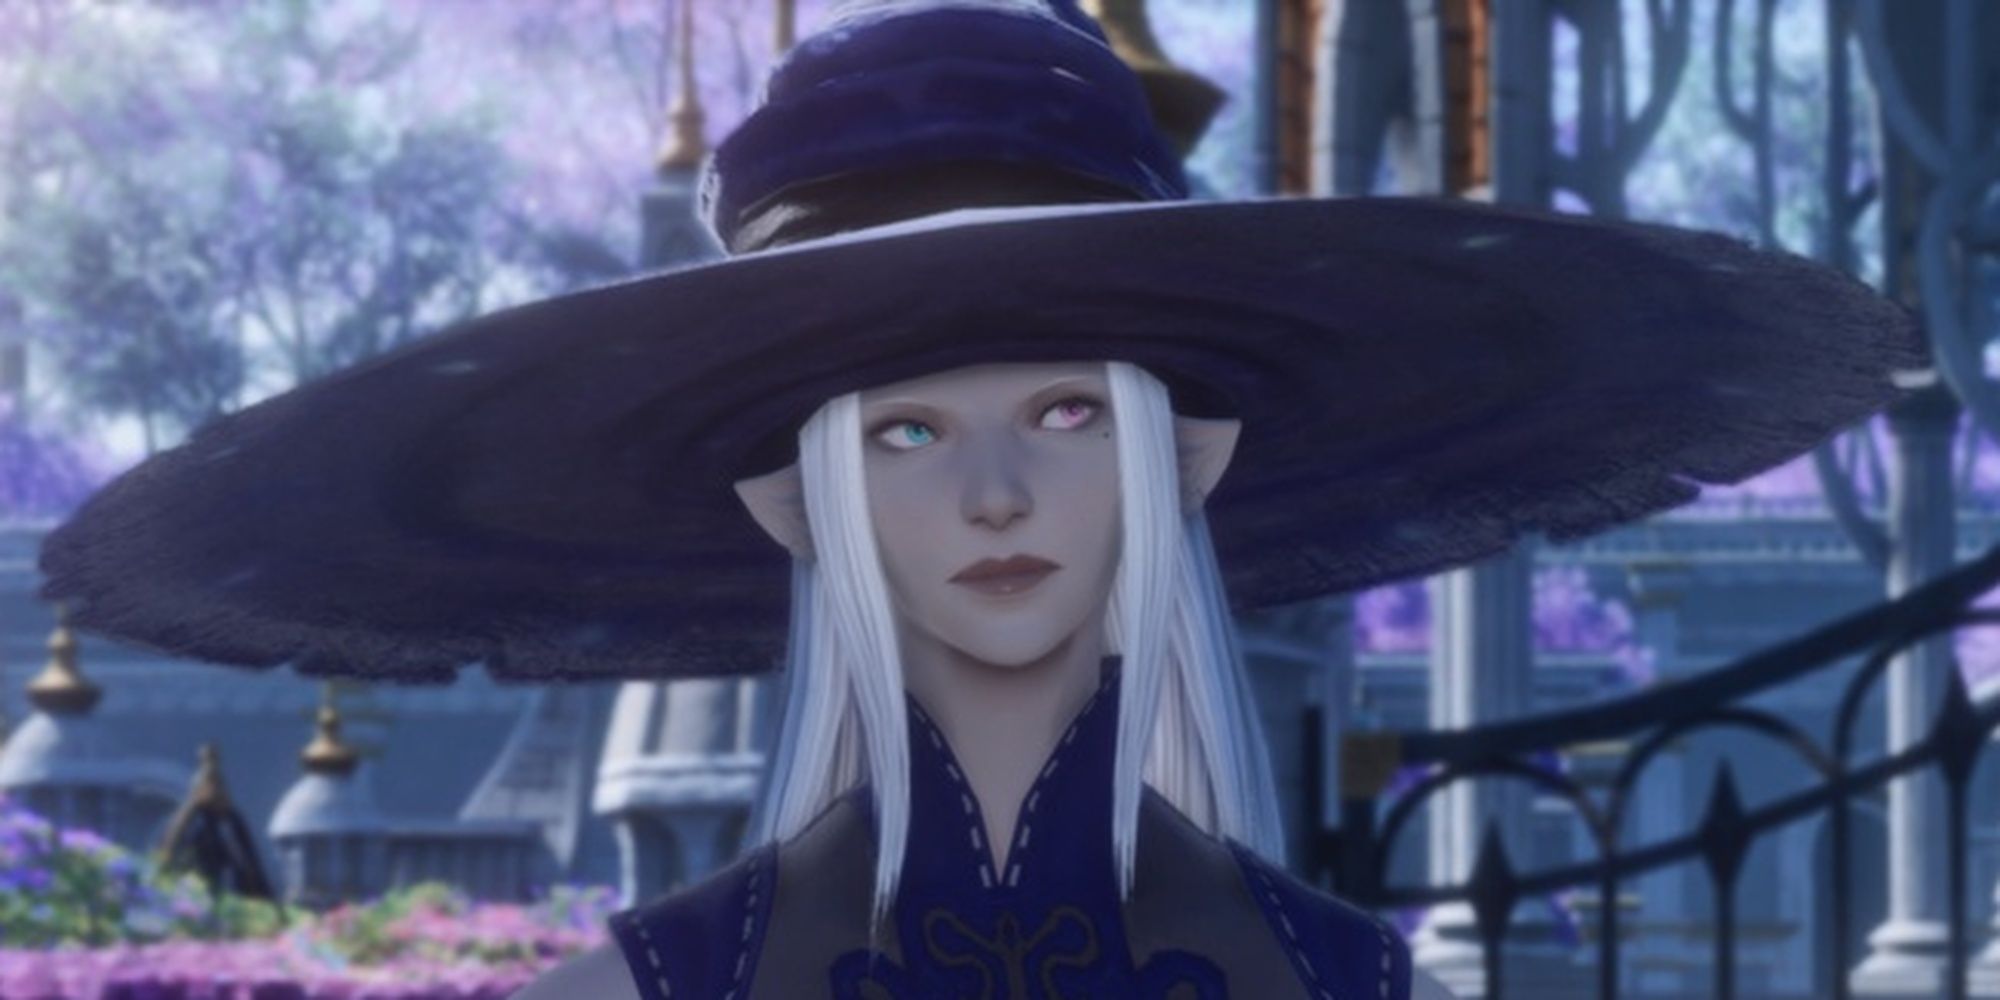 Final Fantasy 14 Elezen In Very Wide Brim Witch Hat